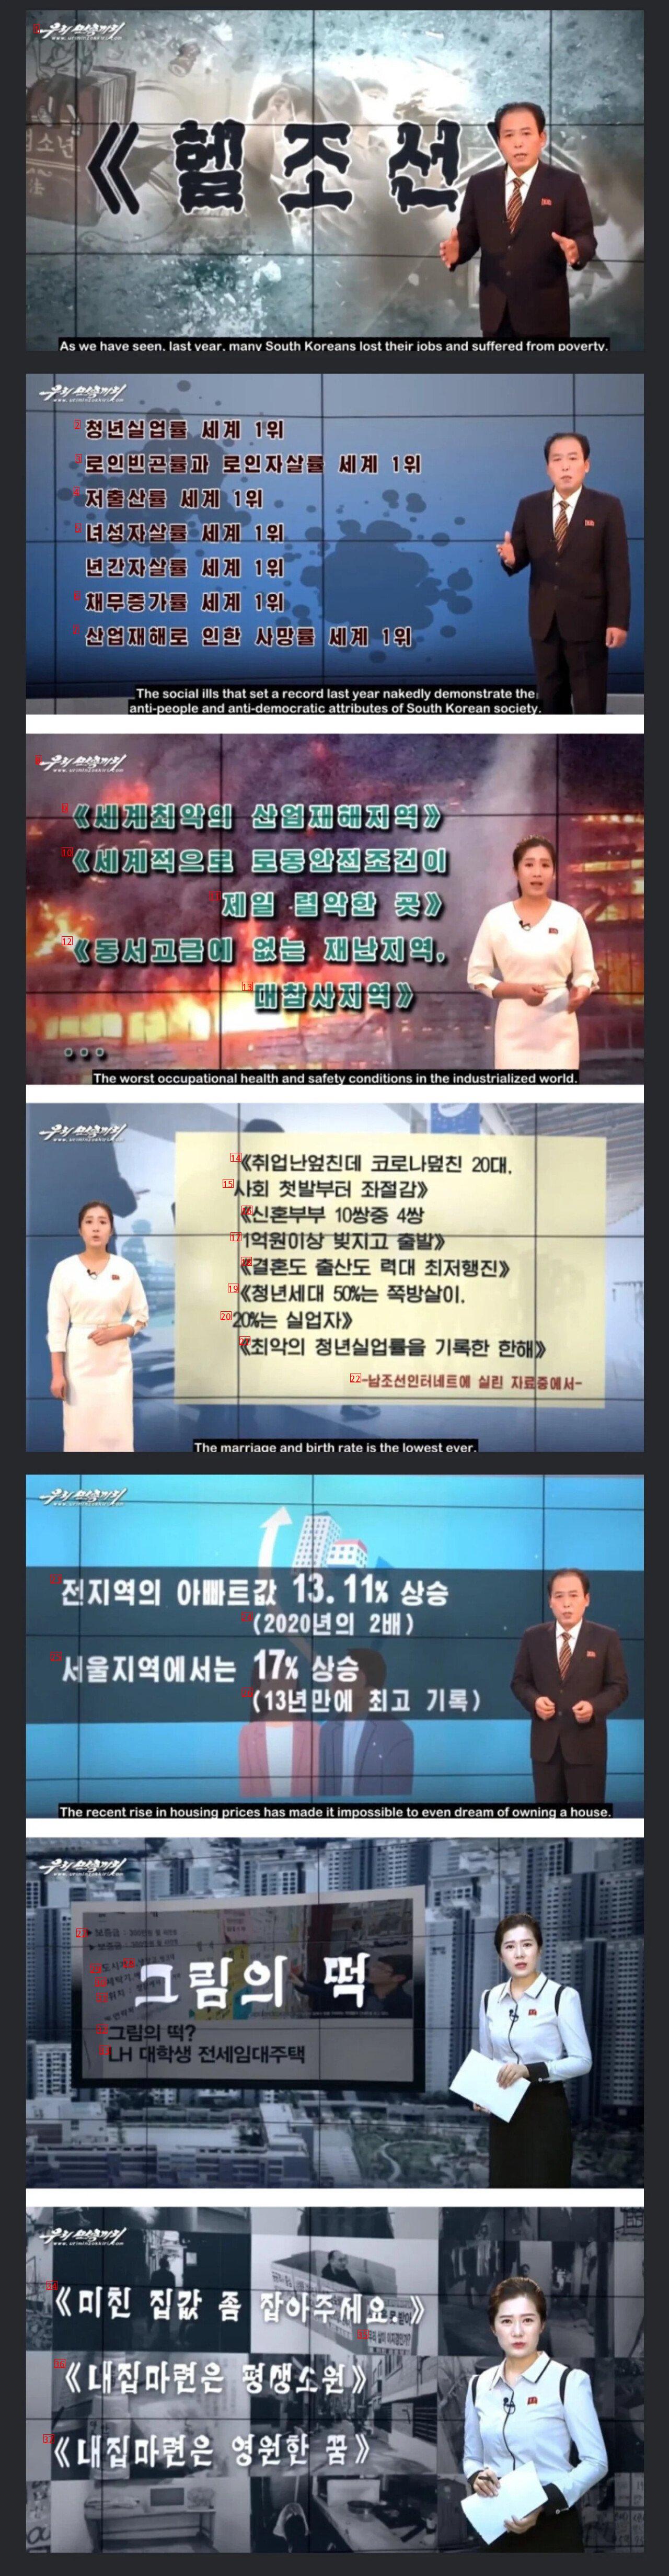 요즘 북한방송 근황.jpg